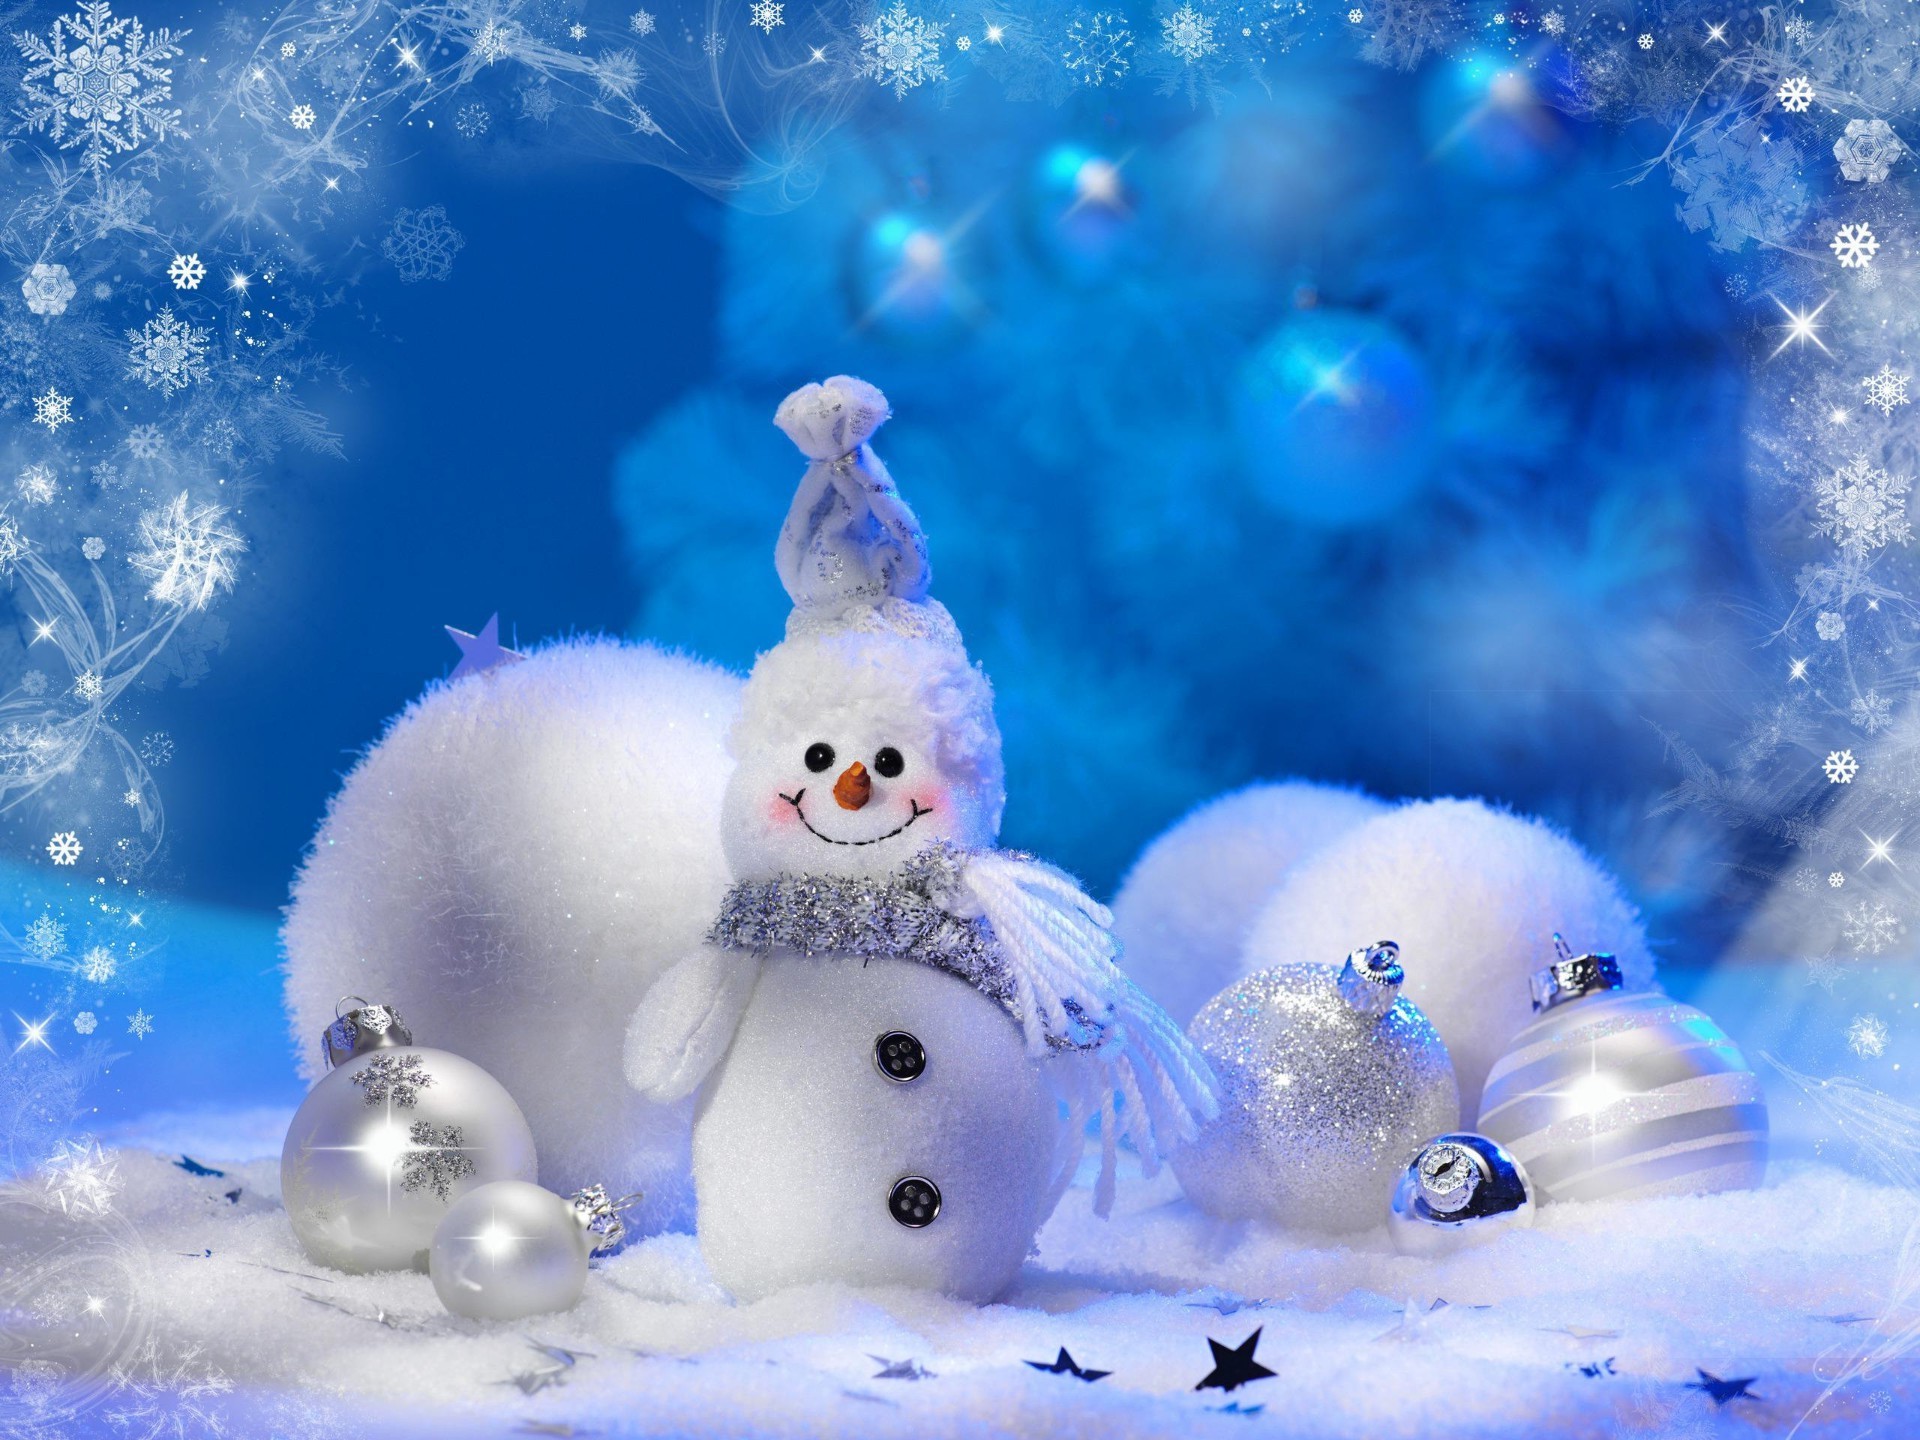 новый год зима рождество снег снежинка мерри мяч праздник холодная сезон мороз снеговик сфера украшения ева удовольствие игрушка рабочего стола луна